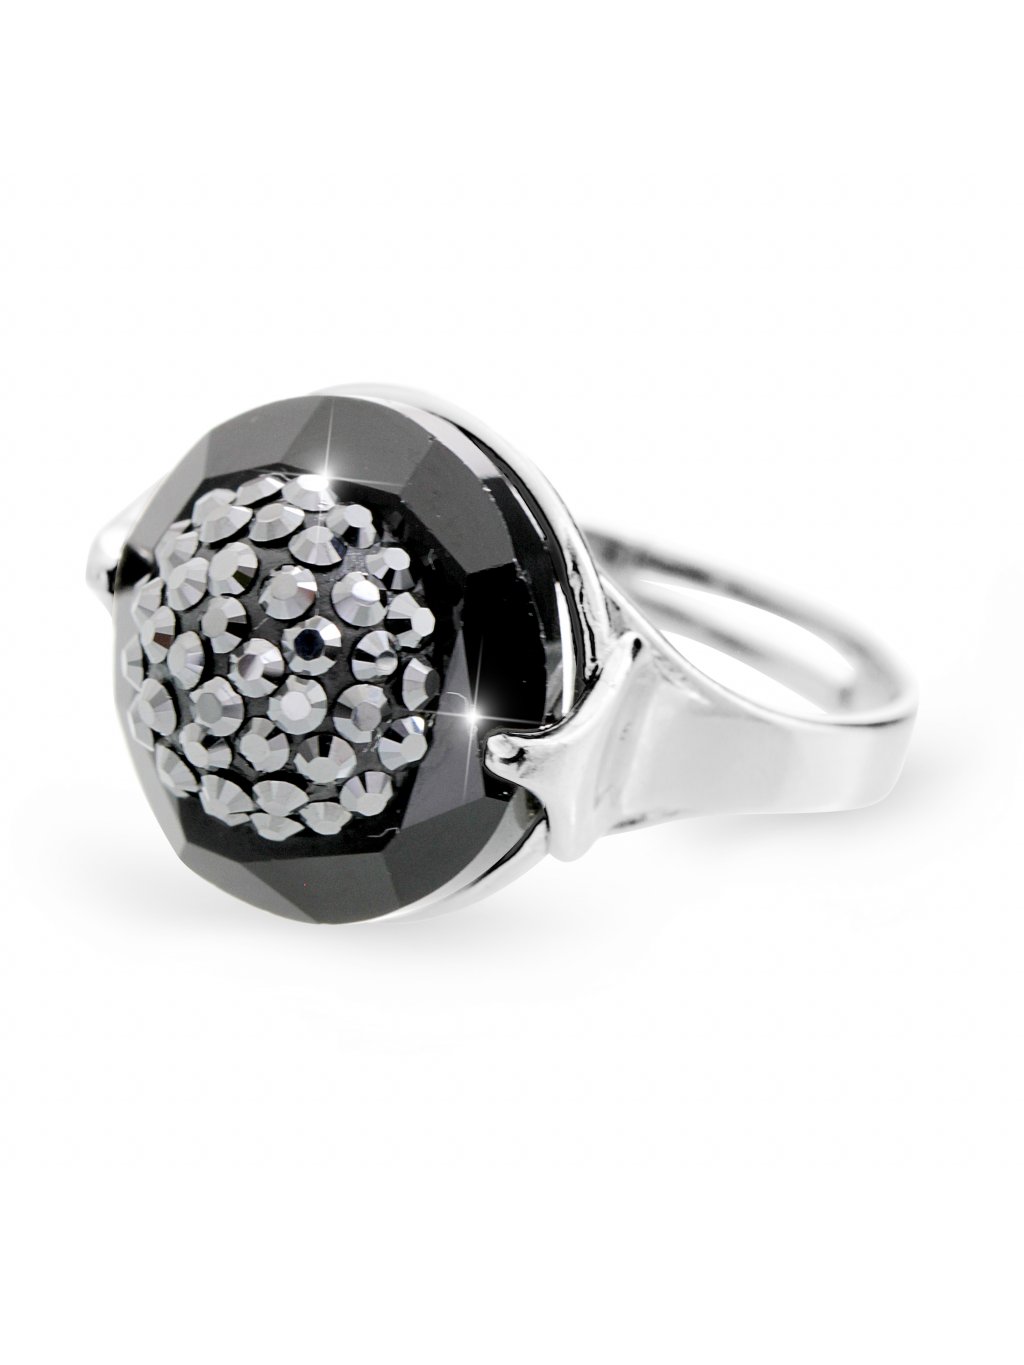 Stříbrný prsten půlkulička s kameny Swarovski hematit - Sklo & Bižuterie CZ